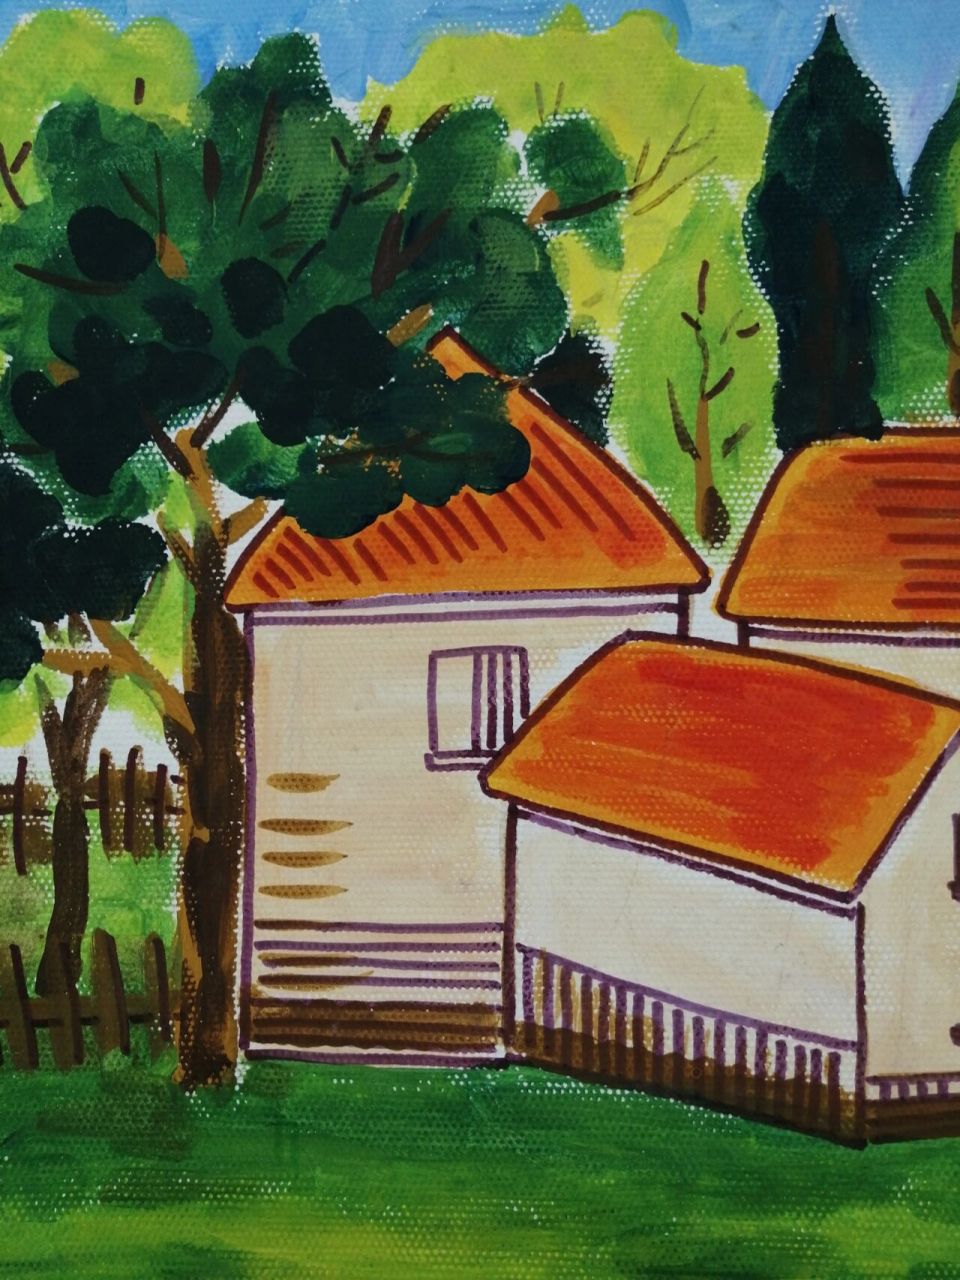 儿童水粉画—美丽乡村 先画水粉,再用水彩笔勾线,小房子和周围环境的